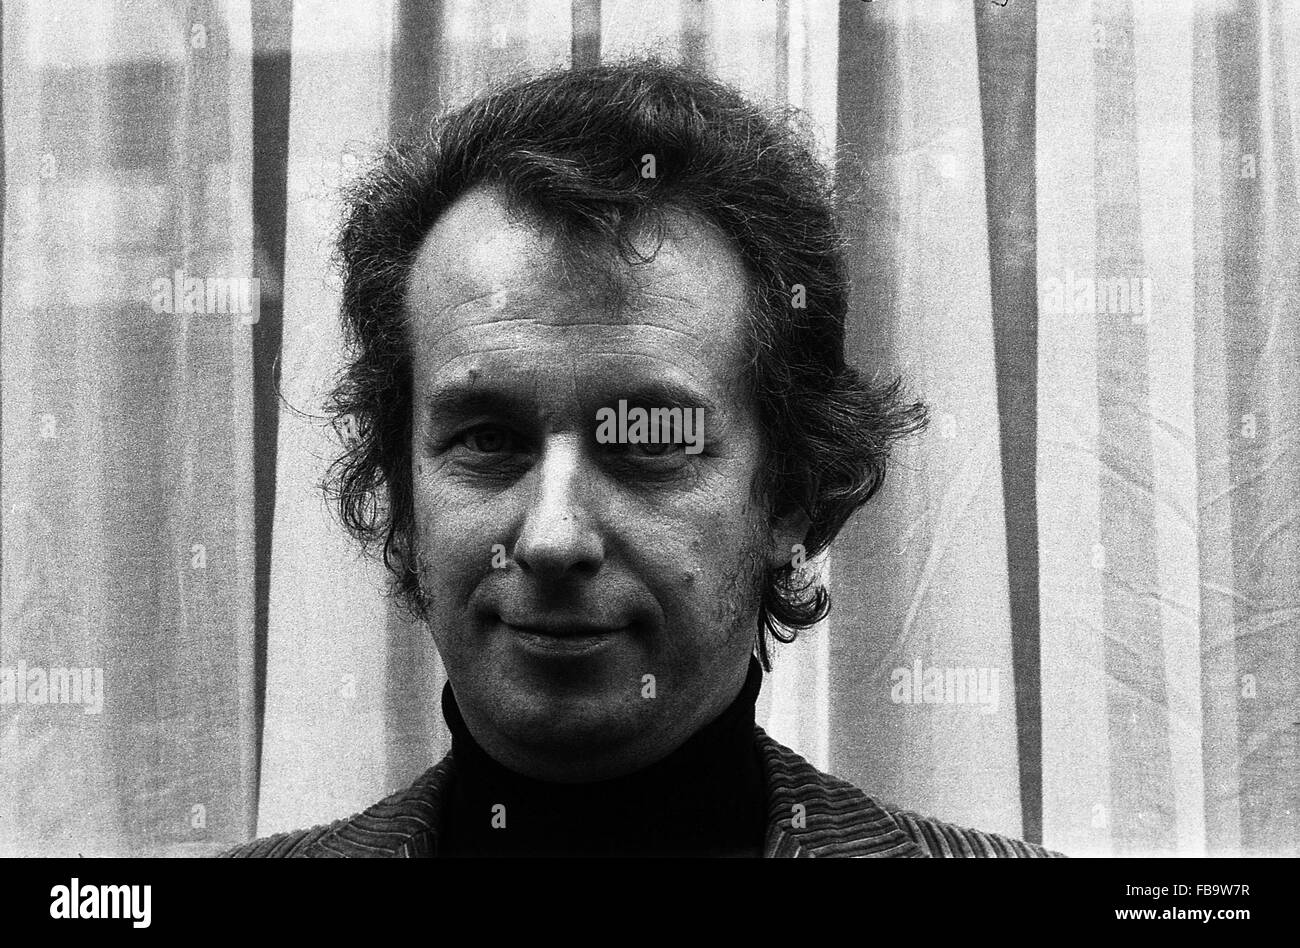 Dieter Schnebel, Paris, 1975 - 1975 - FRANCE / Paris - Dieter Schnebel, Paris, 1975 - Philippe gras / le pictorium Banque D'Images